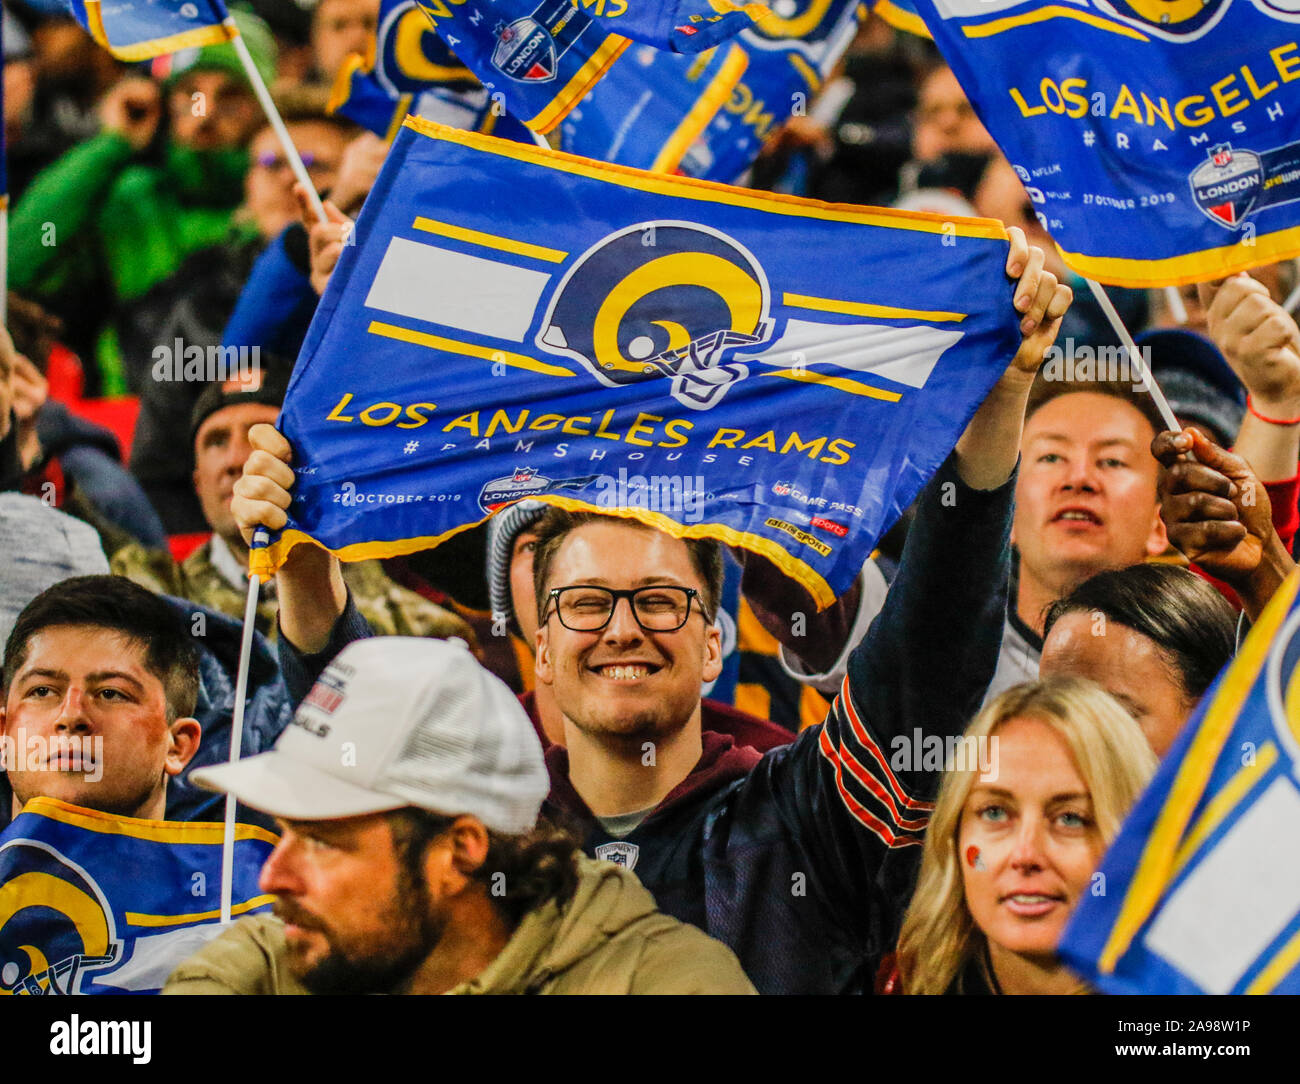 27 octobre 2019 Londres Royaume-uni Las Angeles Rams célébration du ventilateur pendant le match de la NFL entre les Bengals de Cincinnati et les Rams de Los Angeles le 27 octobre 2019 au Stade de Wembley, Londres, Angleterre. Banque D'Images